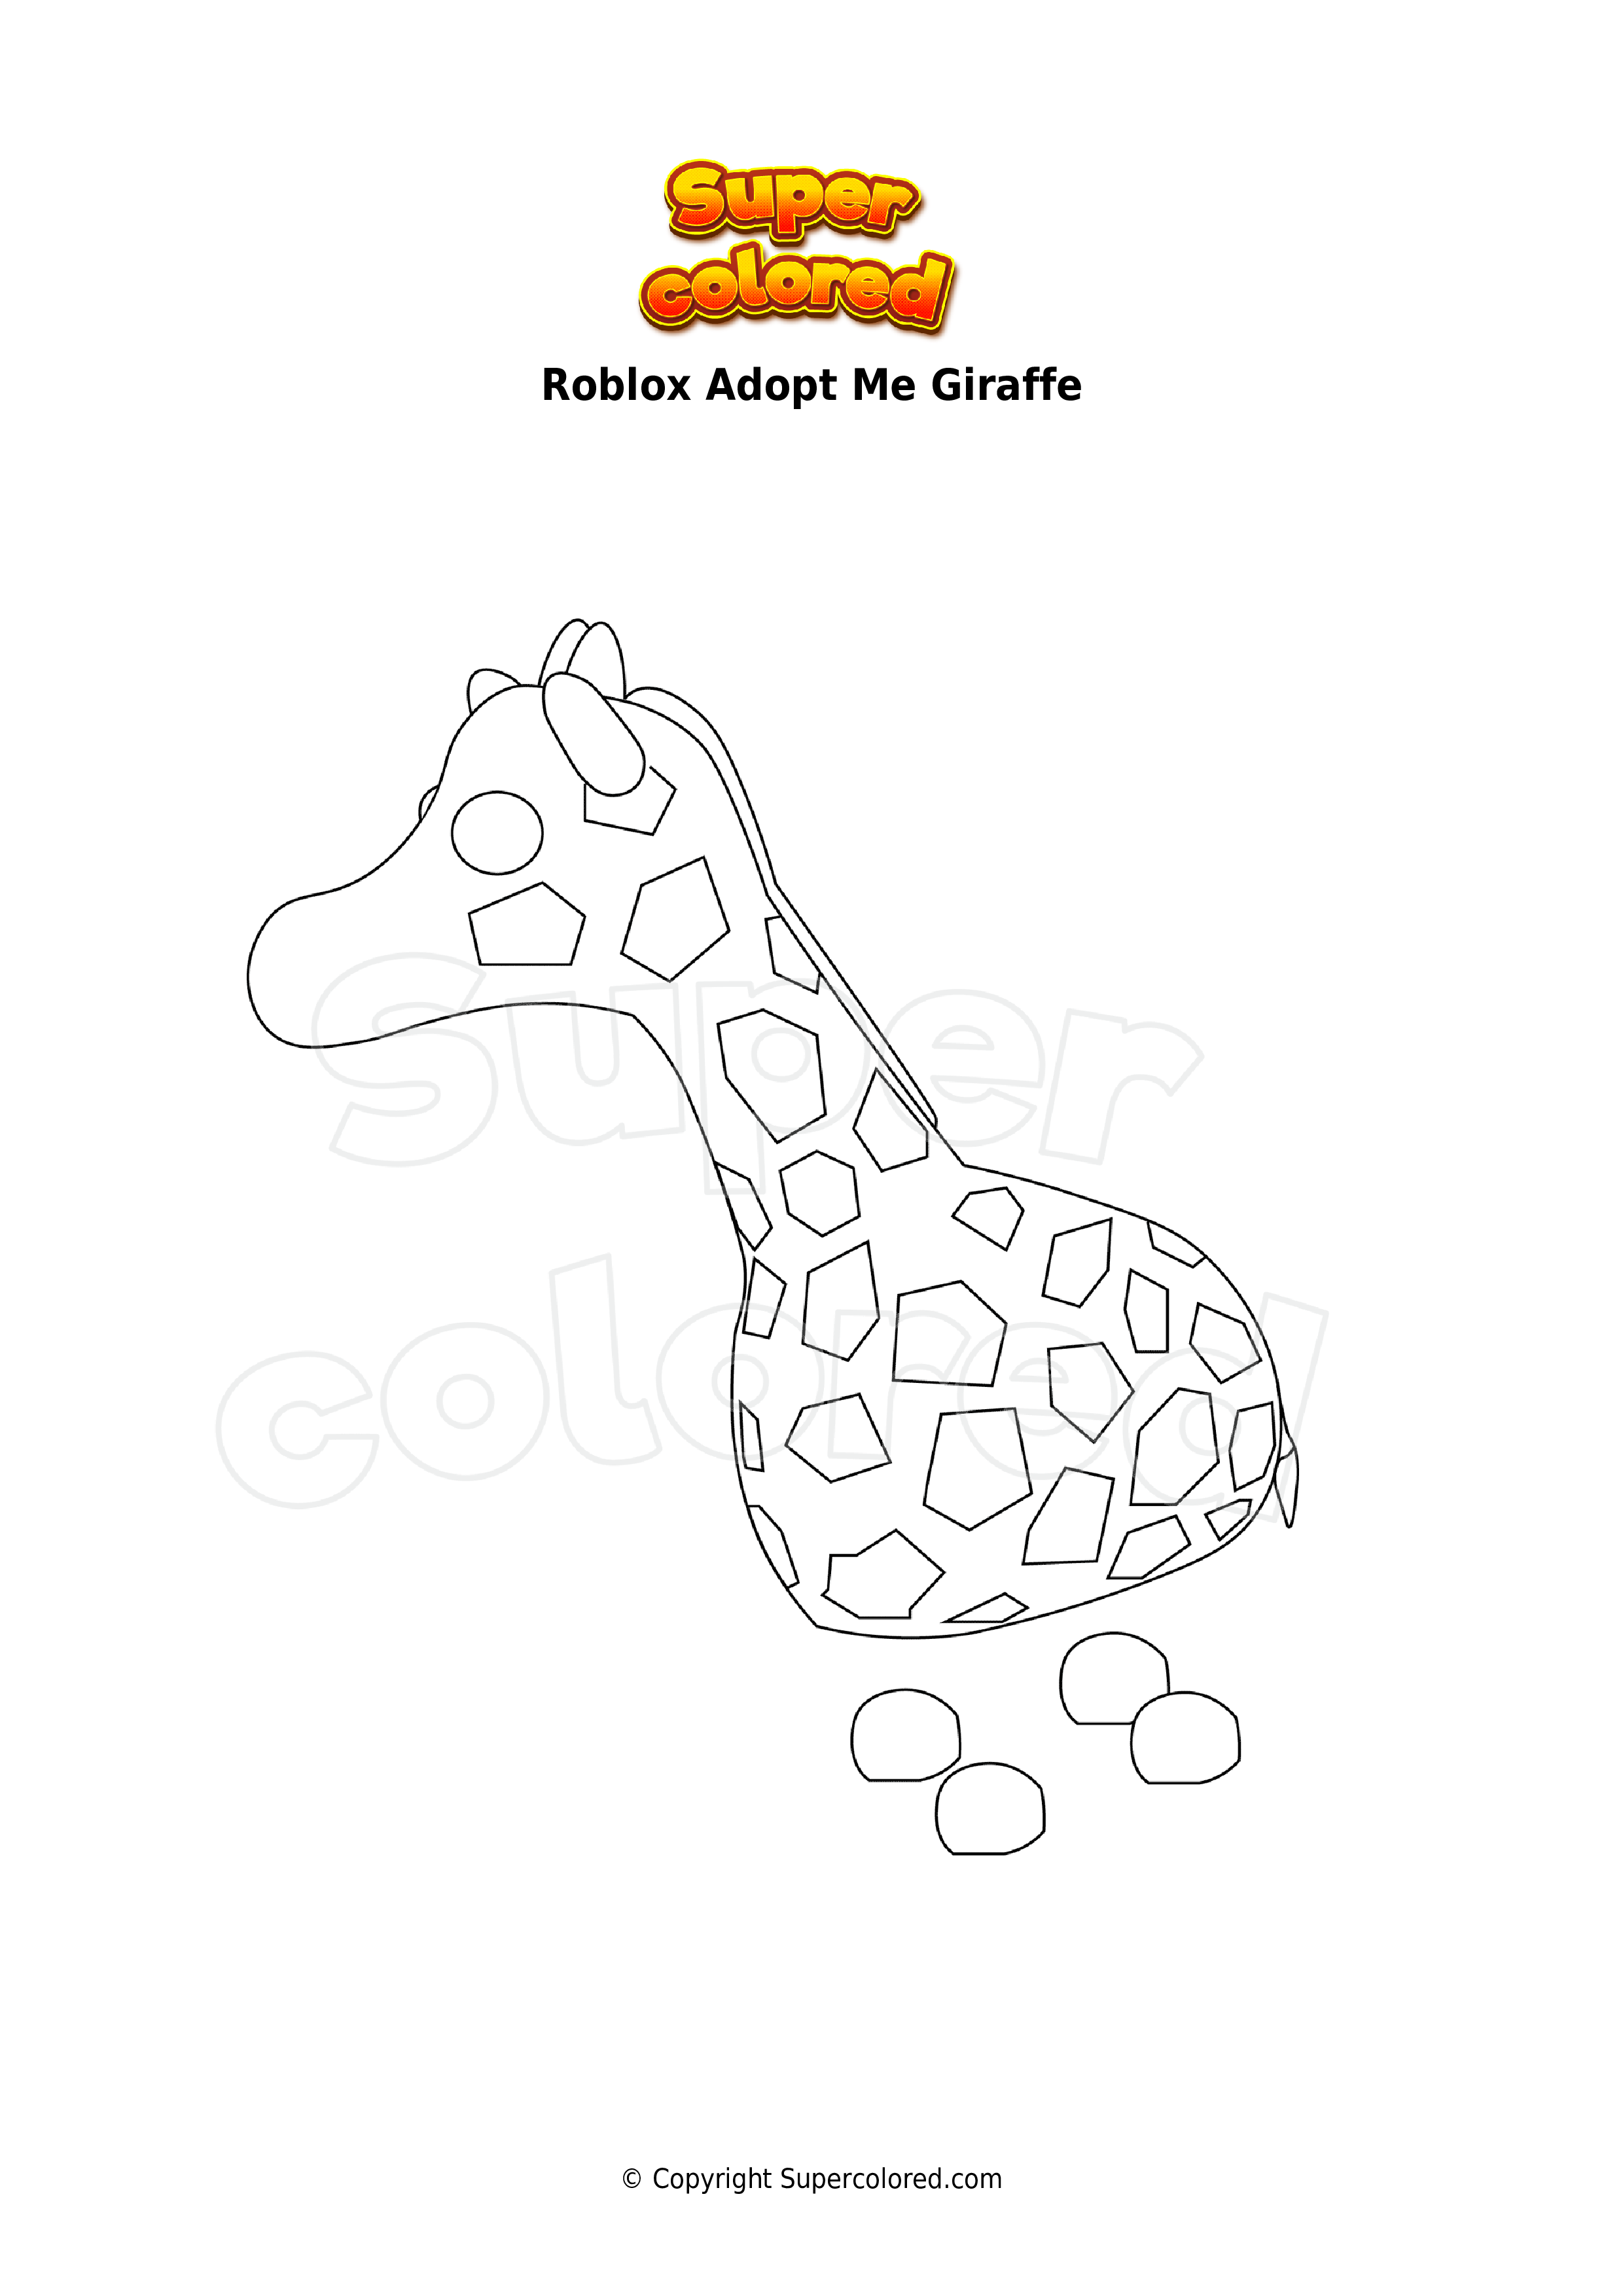 Coloring page Roblox Adopt Me Giraffe - Supercolored.com